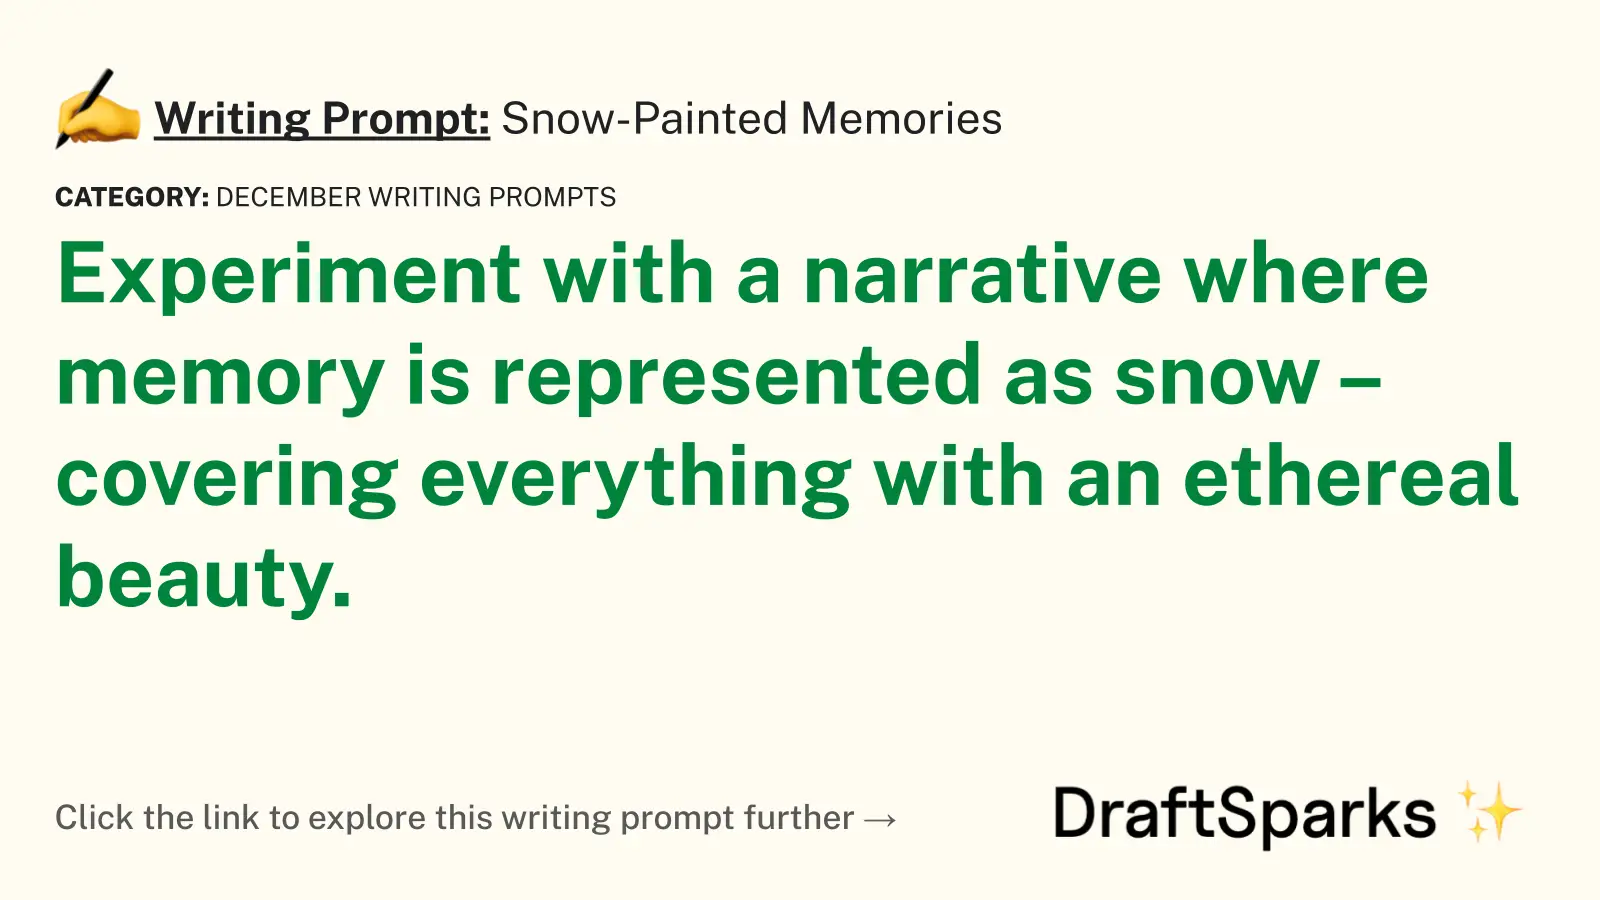 Snow-Painted Memories